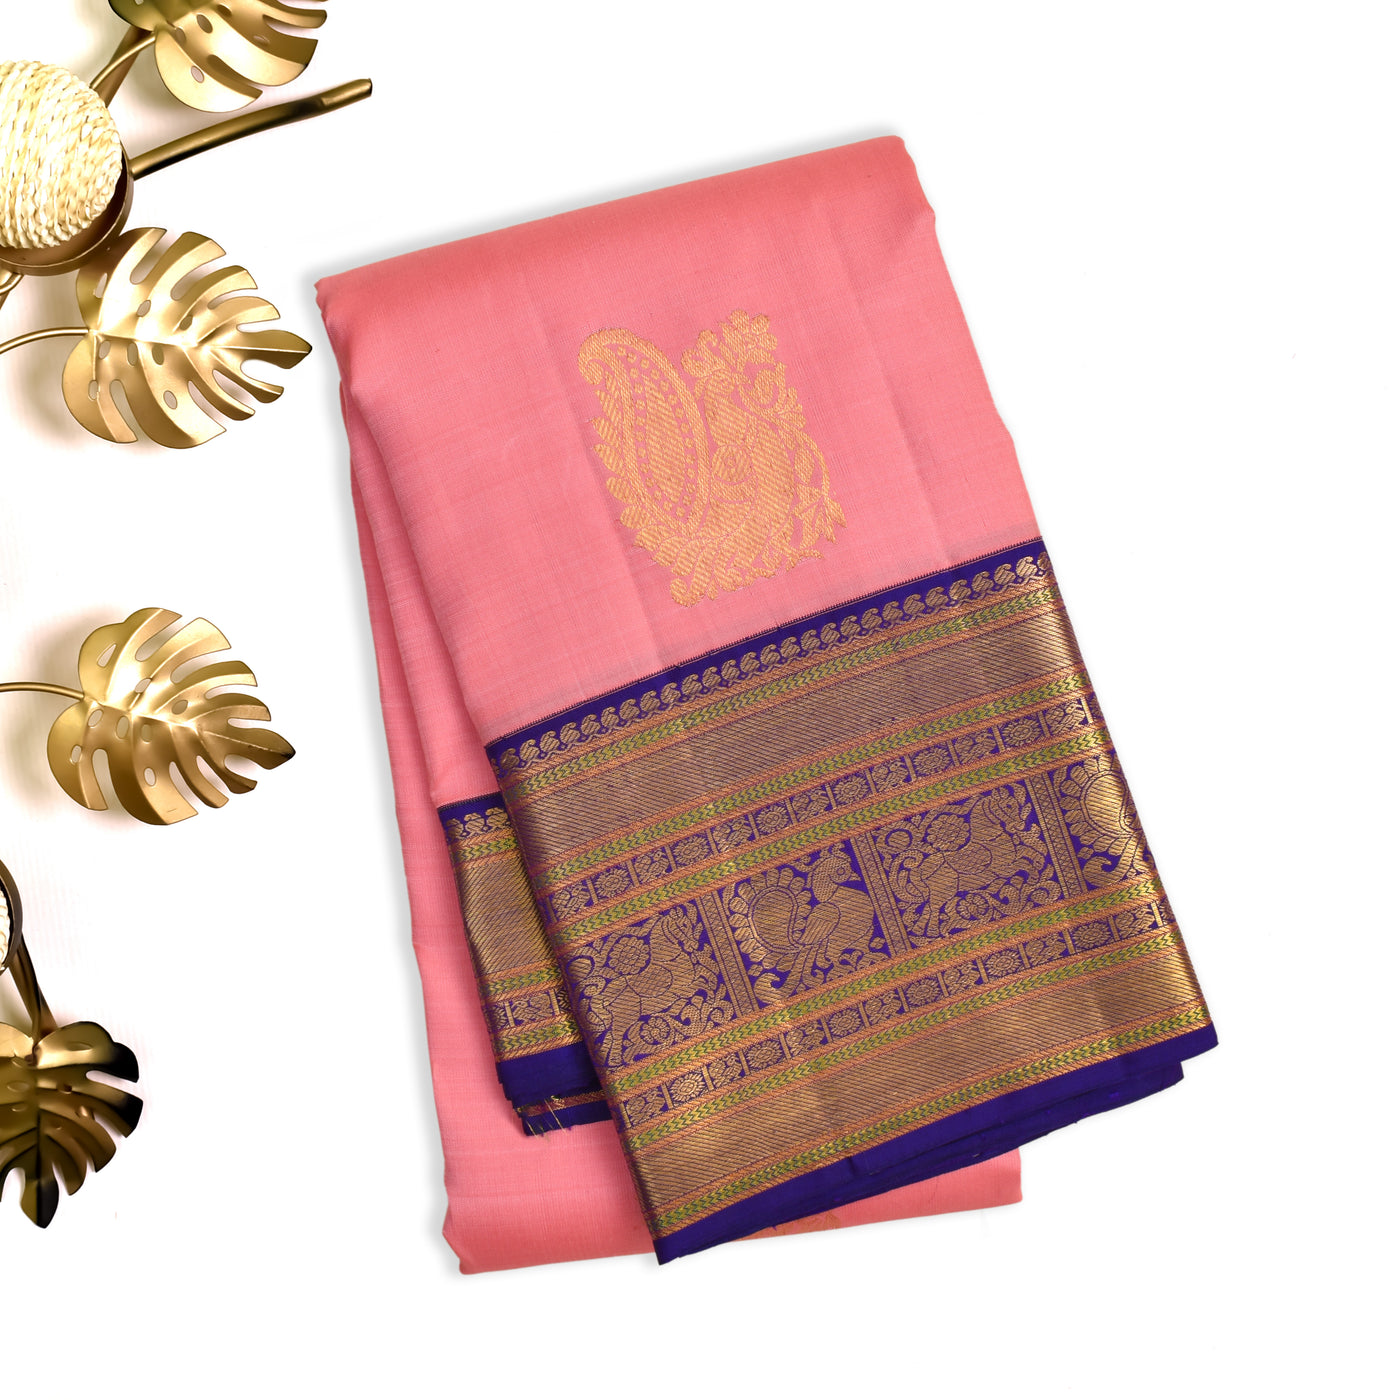 Pink Kanchipuram Silk Saree with Annam Butta Design